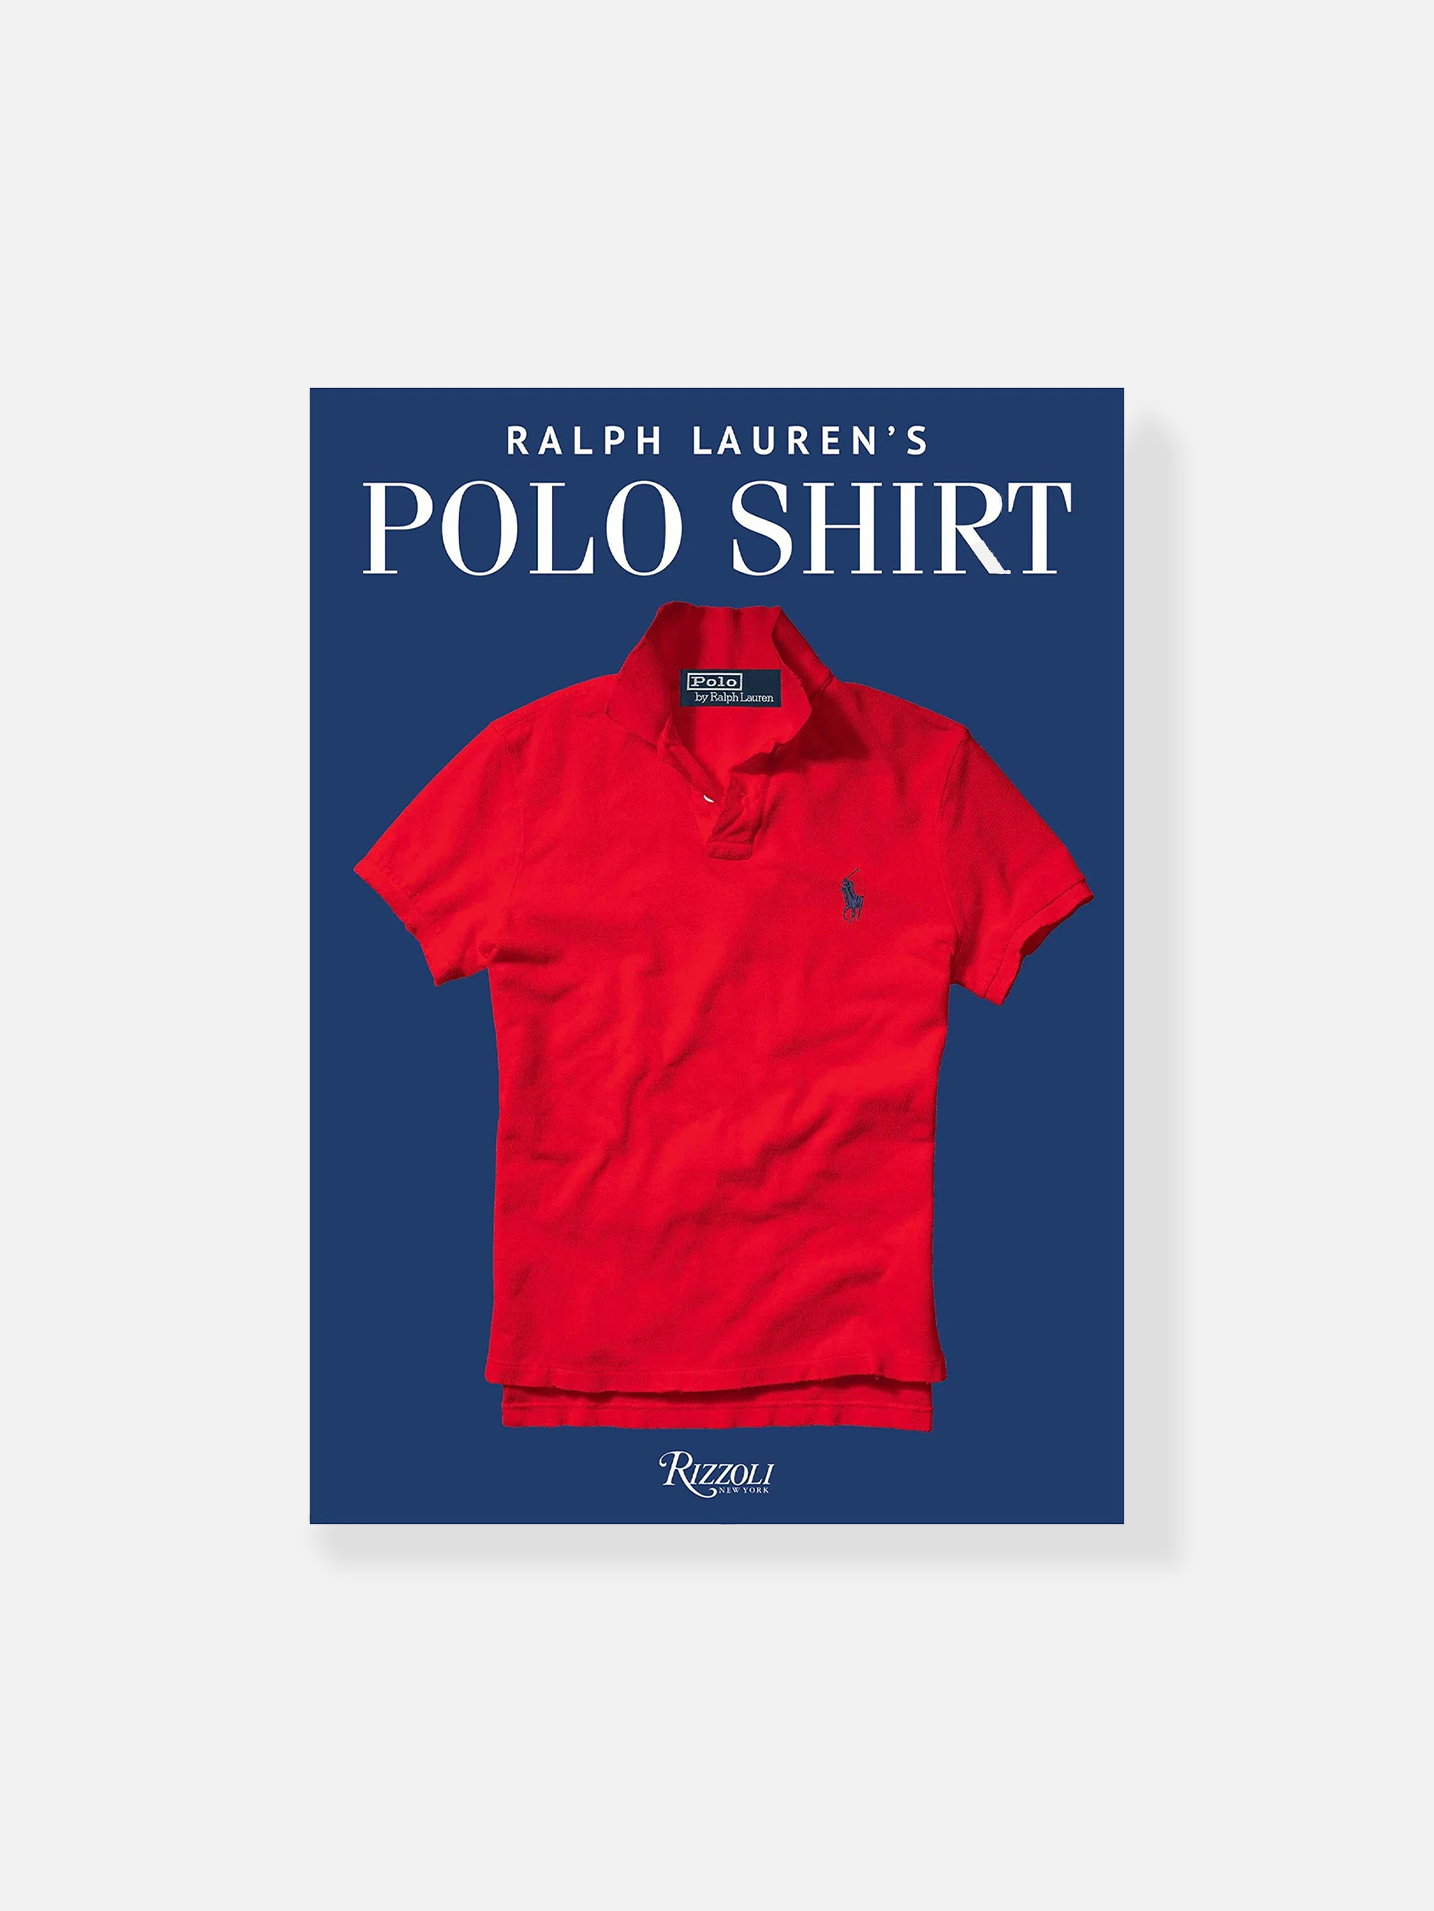 Ralph Lauren’s Polo Shirt Book – Bricks & Wood